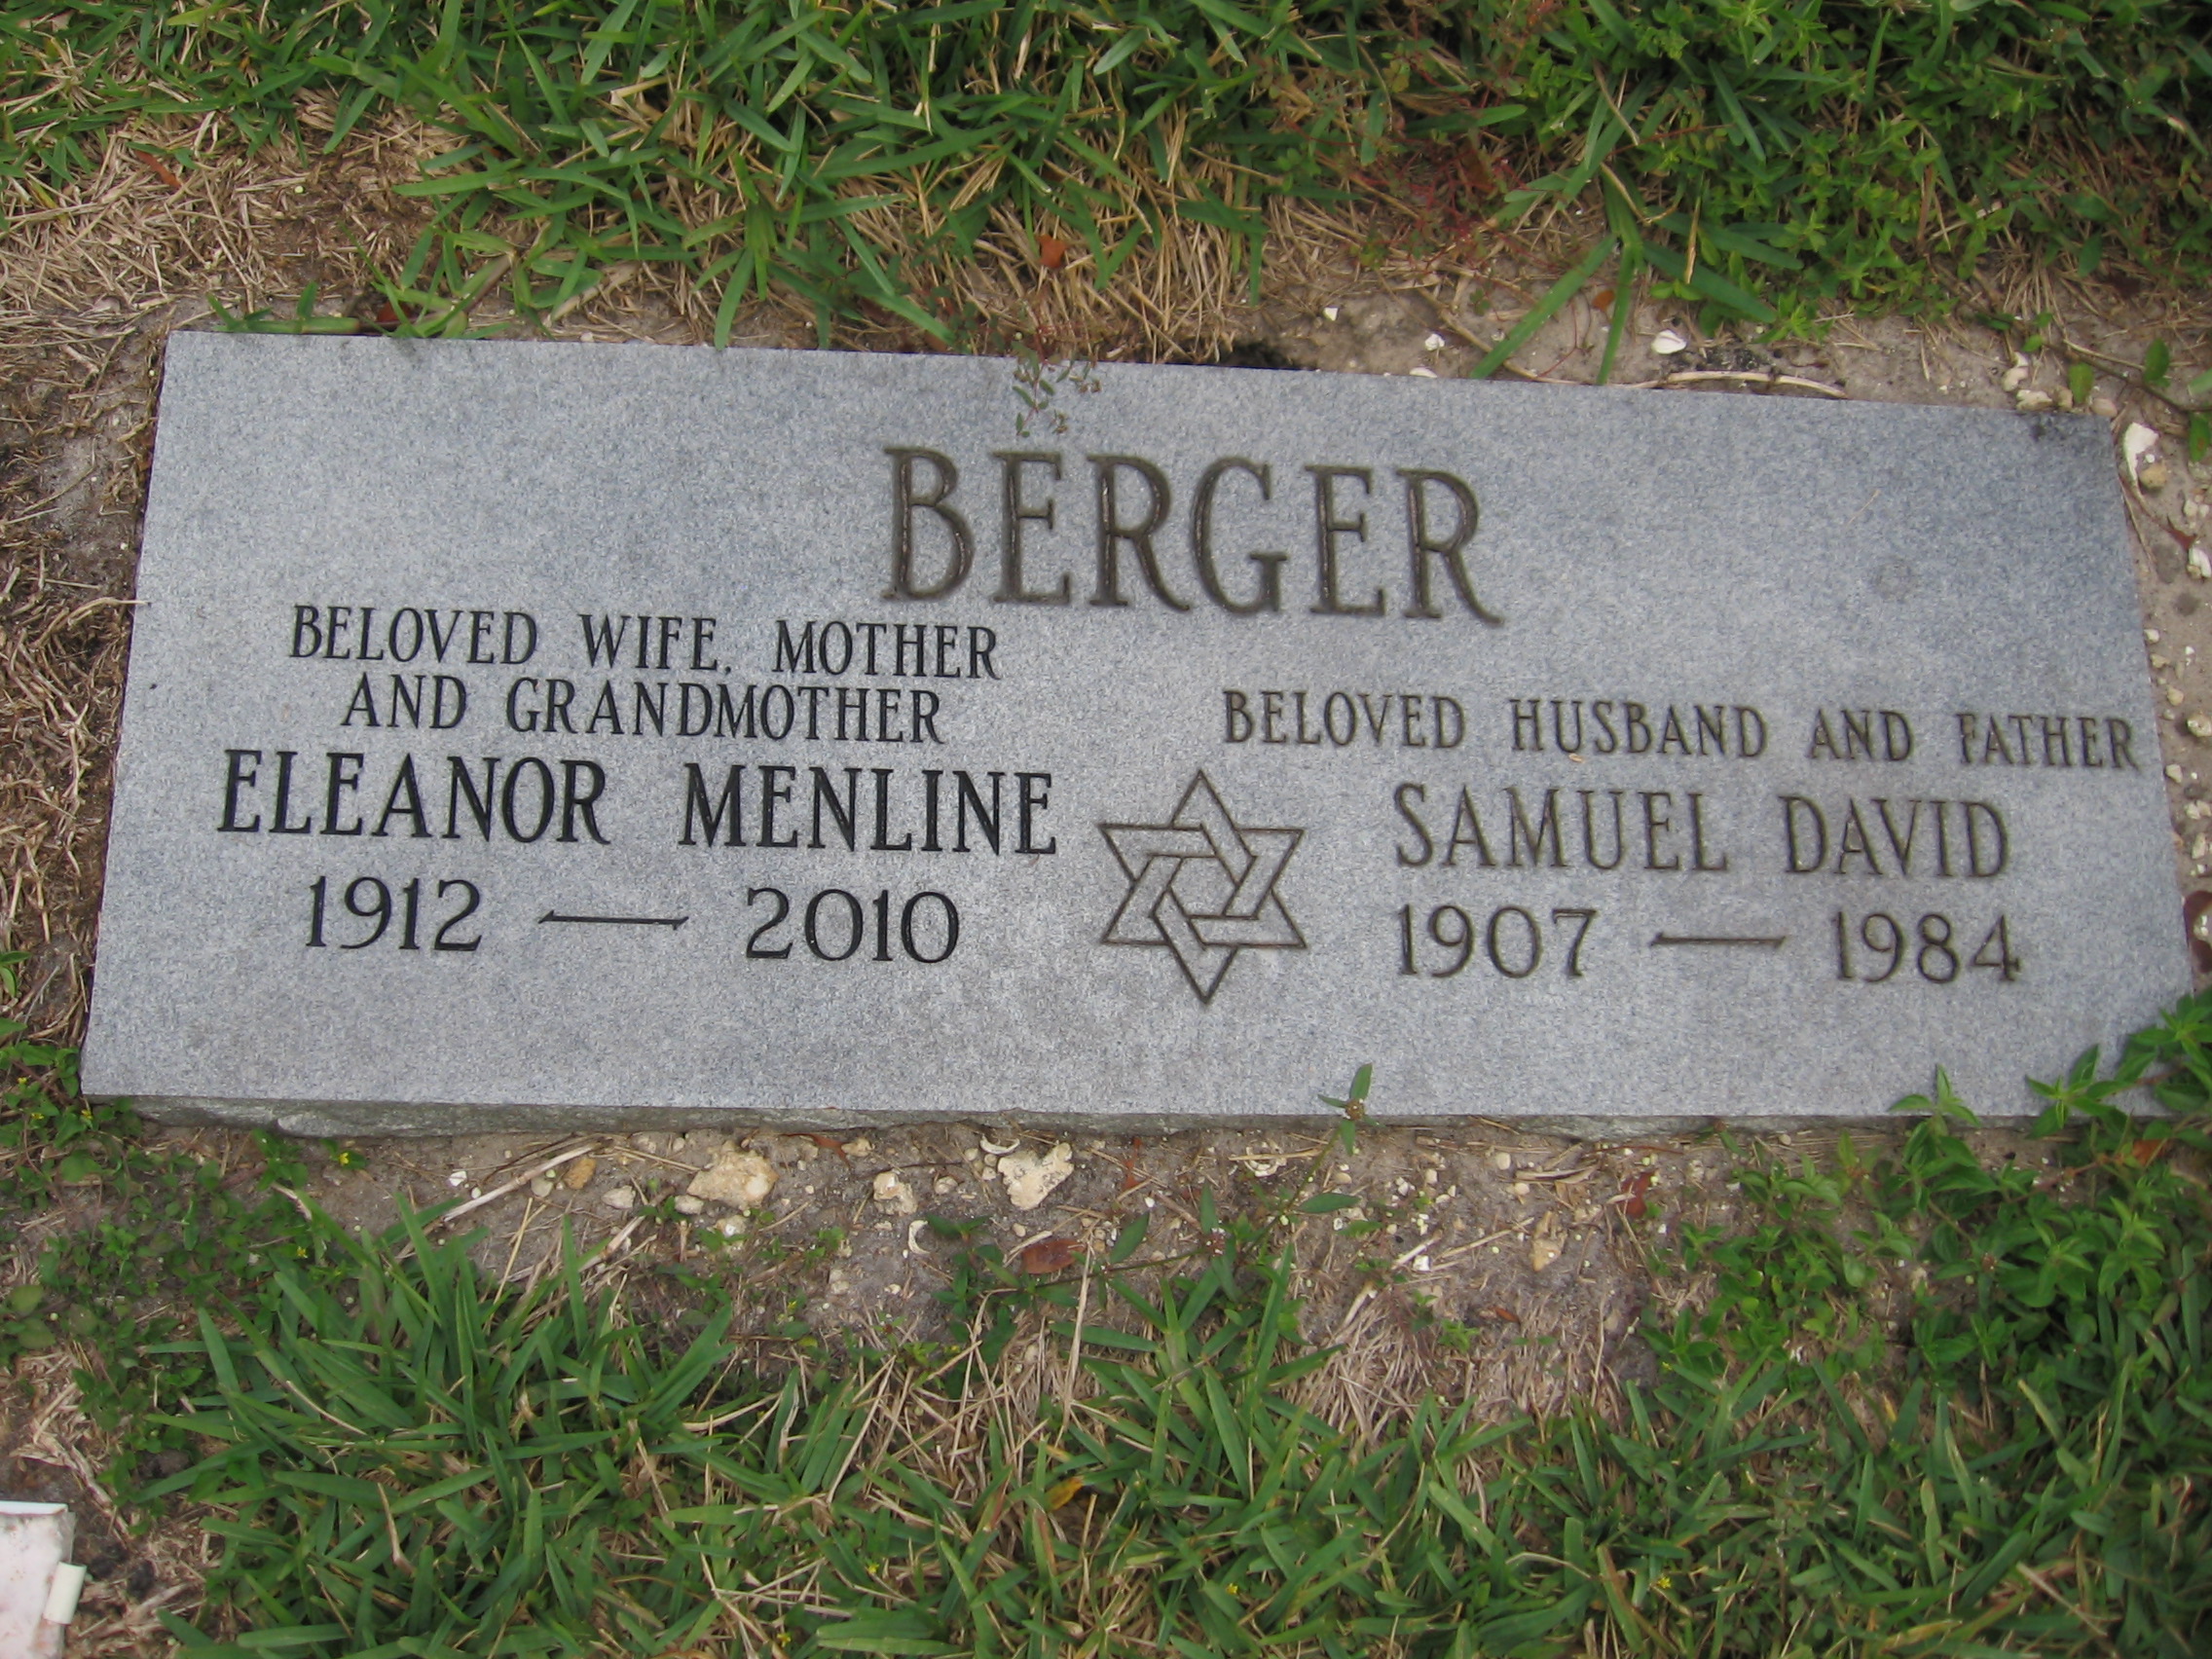 Eleanor Menline Berger